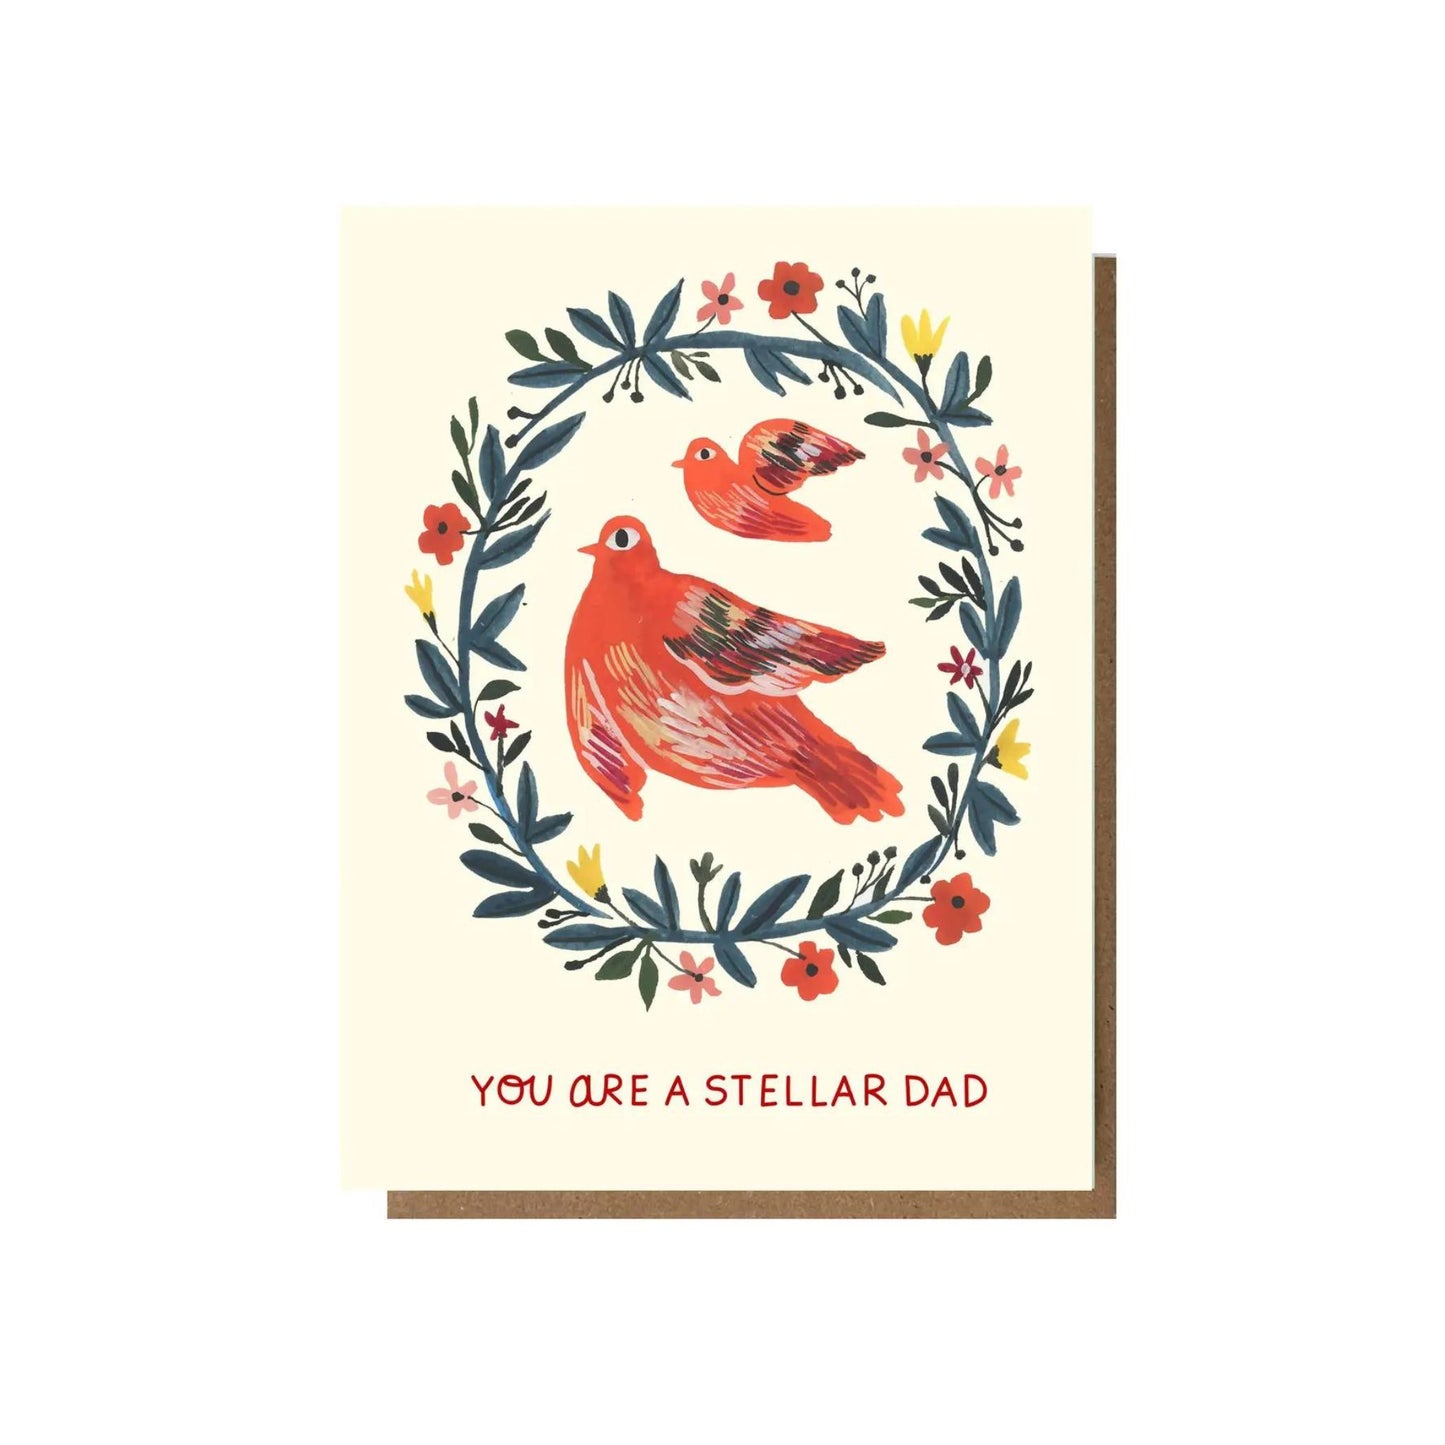 Stellar Dad Card by Esme